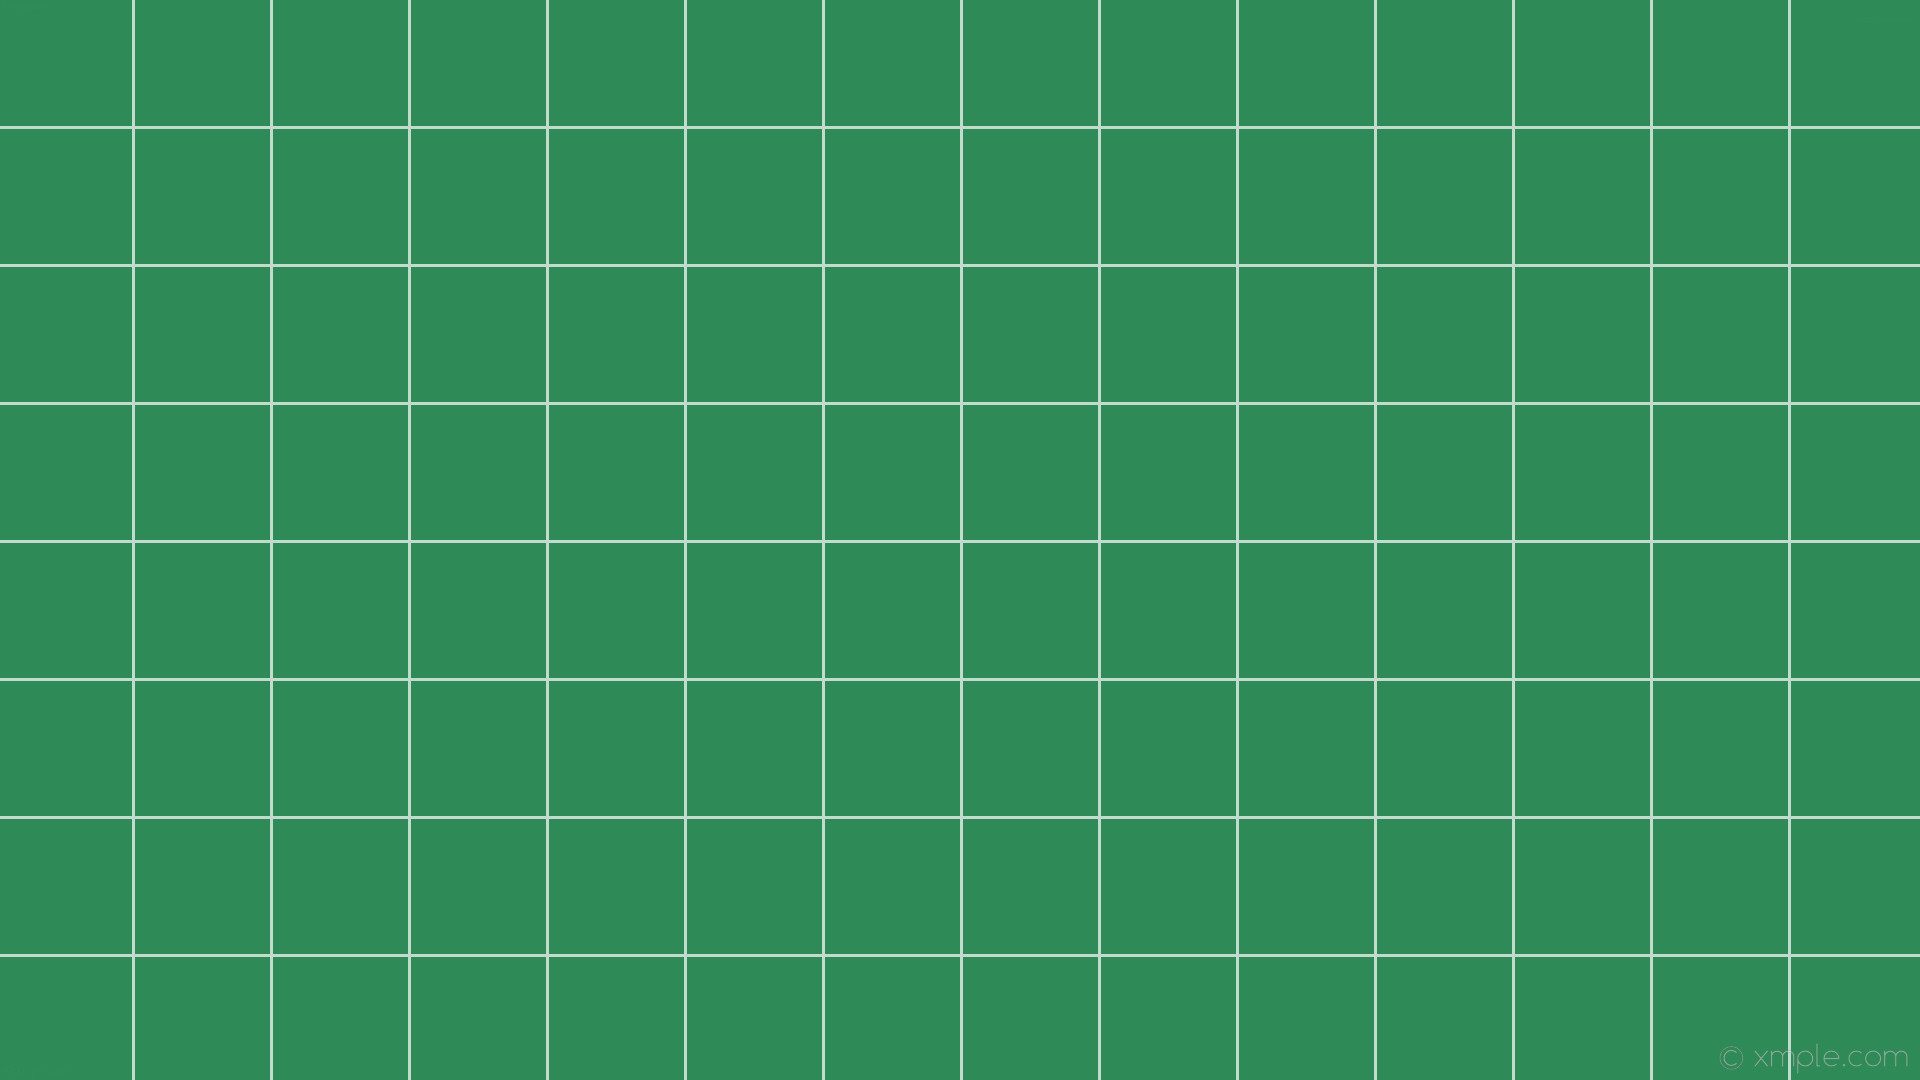 1920x1080 wallpaper white green grid graph paper sea green #2e8b57 #ffffff 0Â° 3px  138px